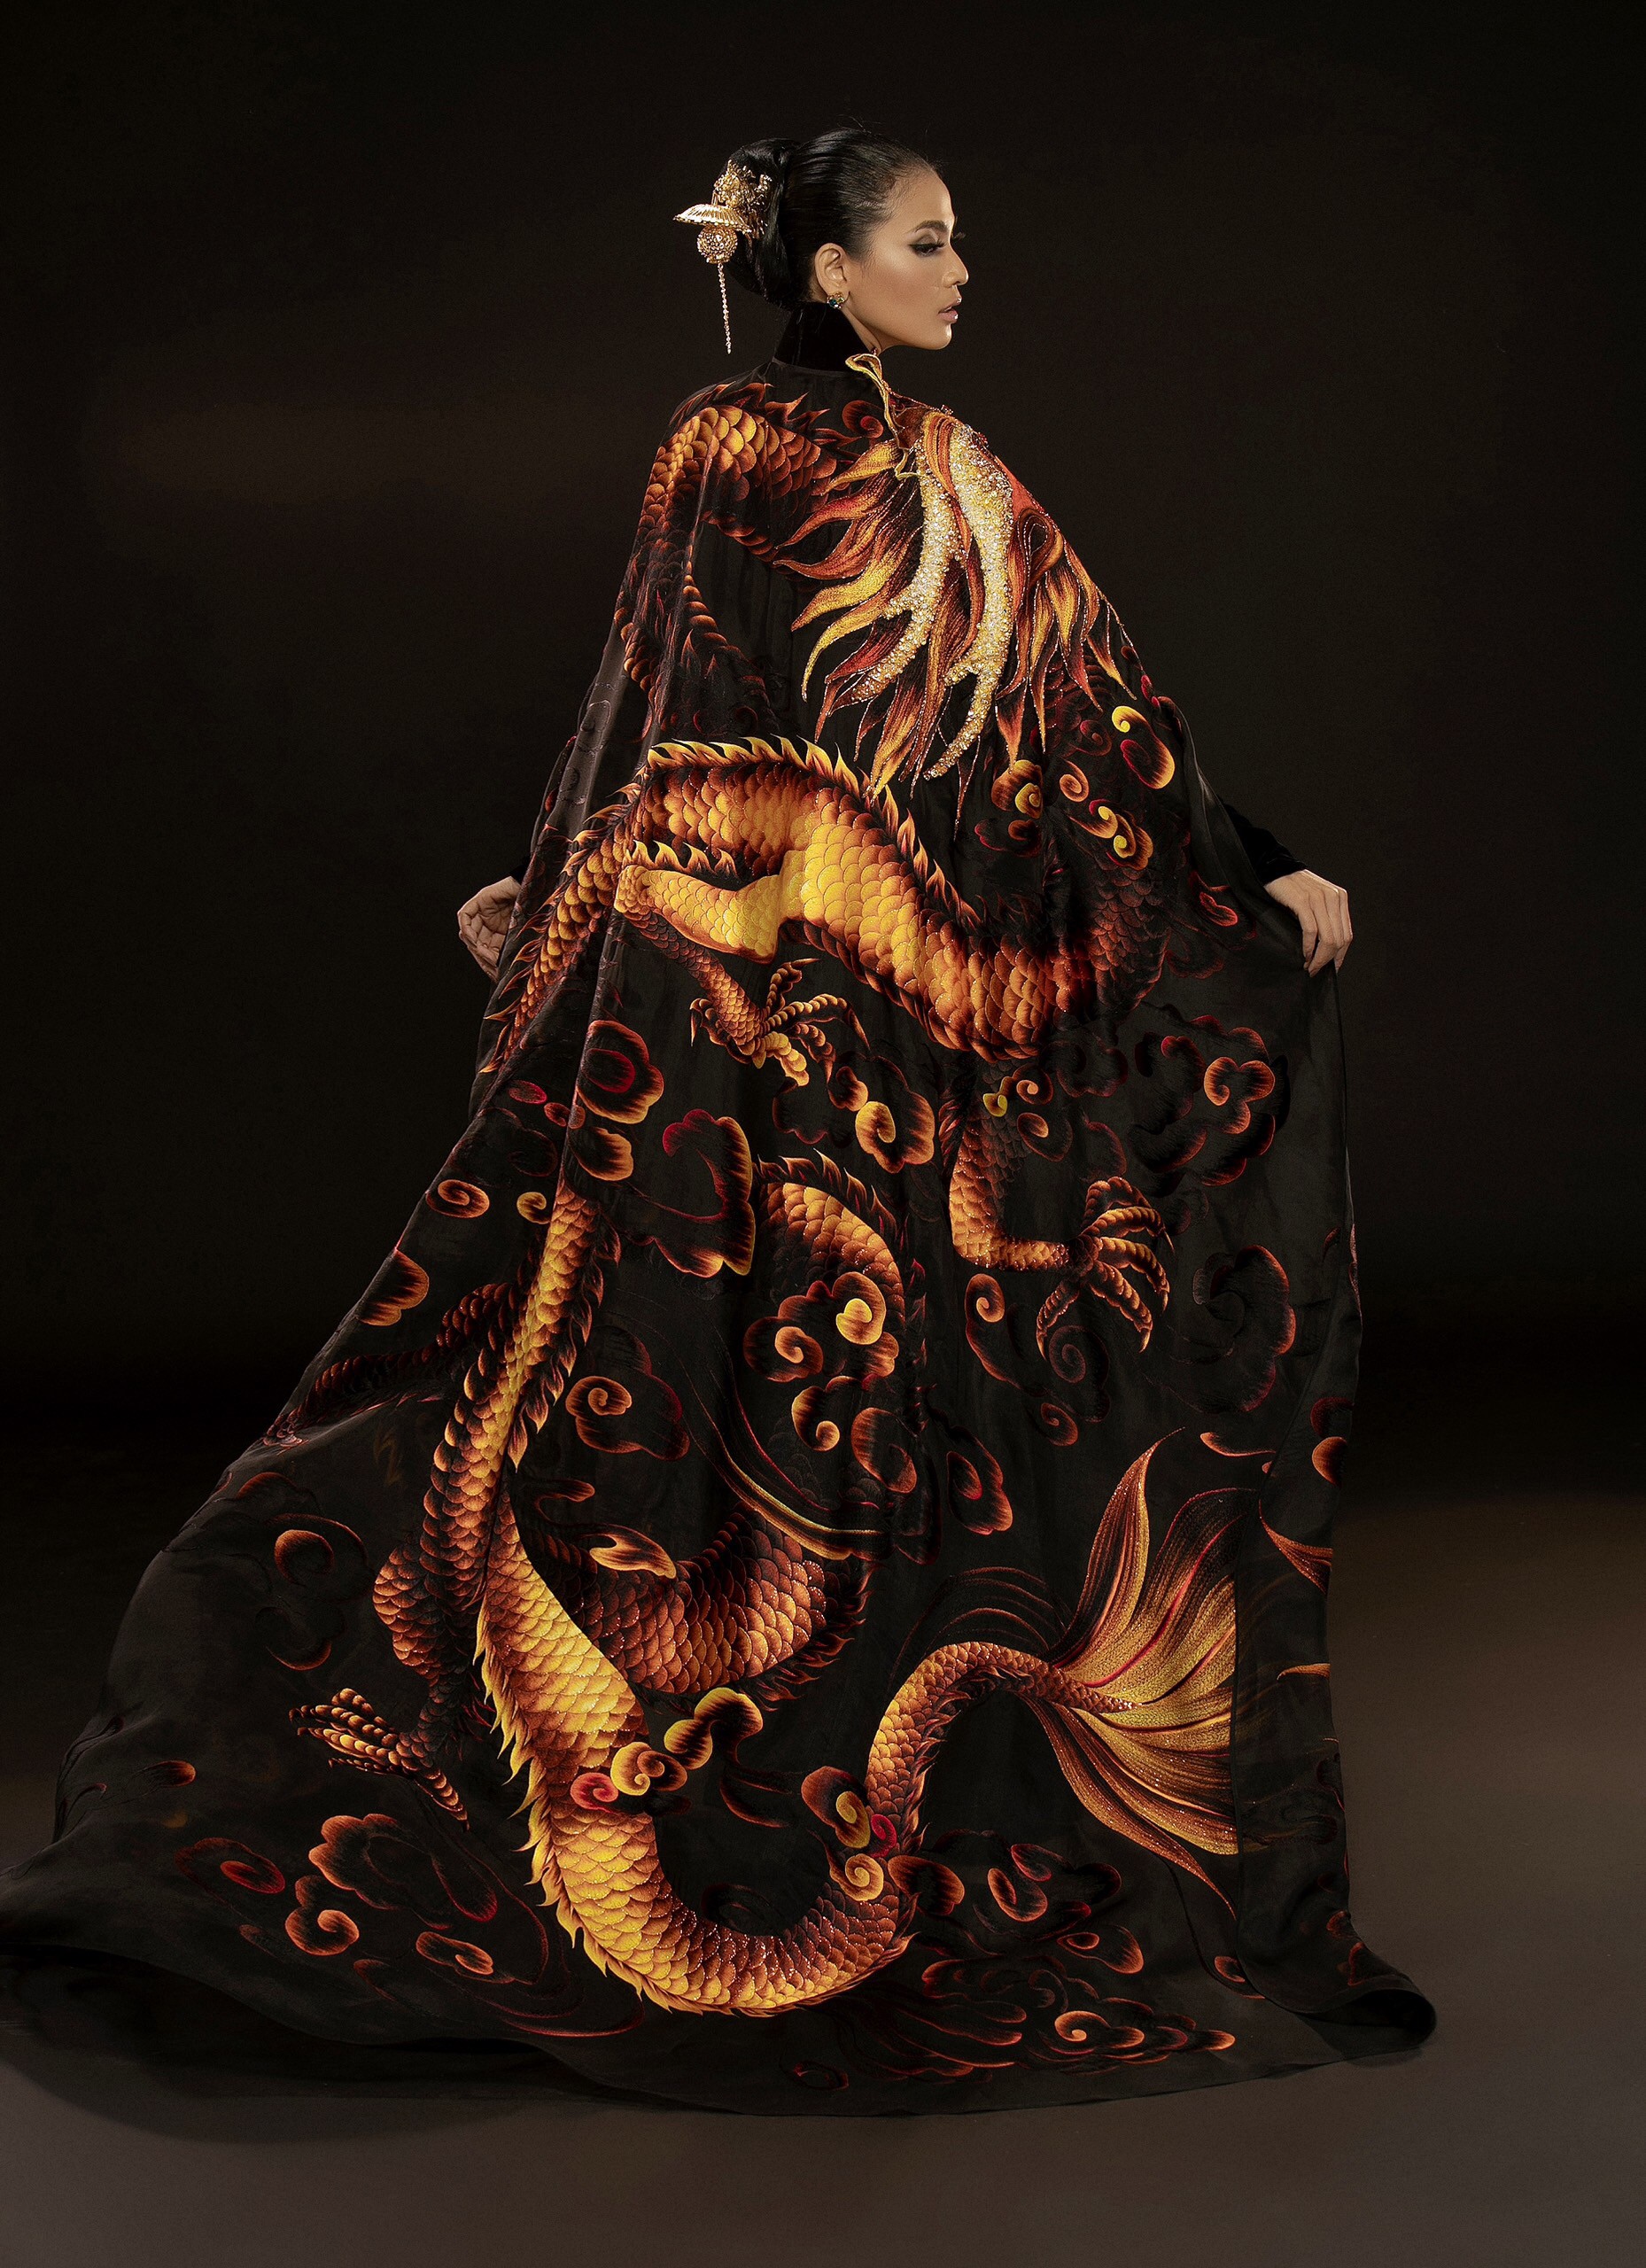 Cận cảnh bộ áo dài giúp Trương Thị May gây ấn tượng sau màn xuất hiện phô phang của Ngọc Trinh tại Cannes 2019  - Ảnh 11.